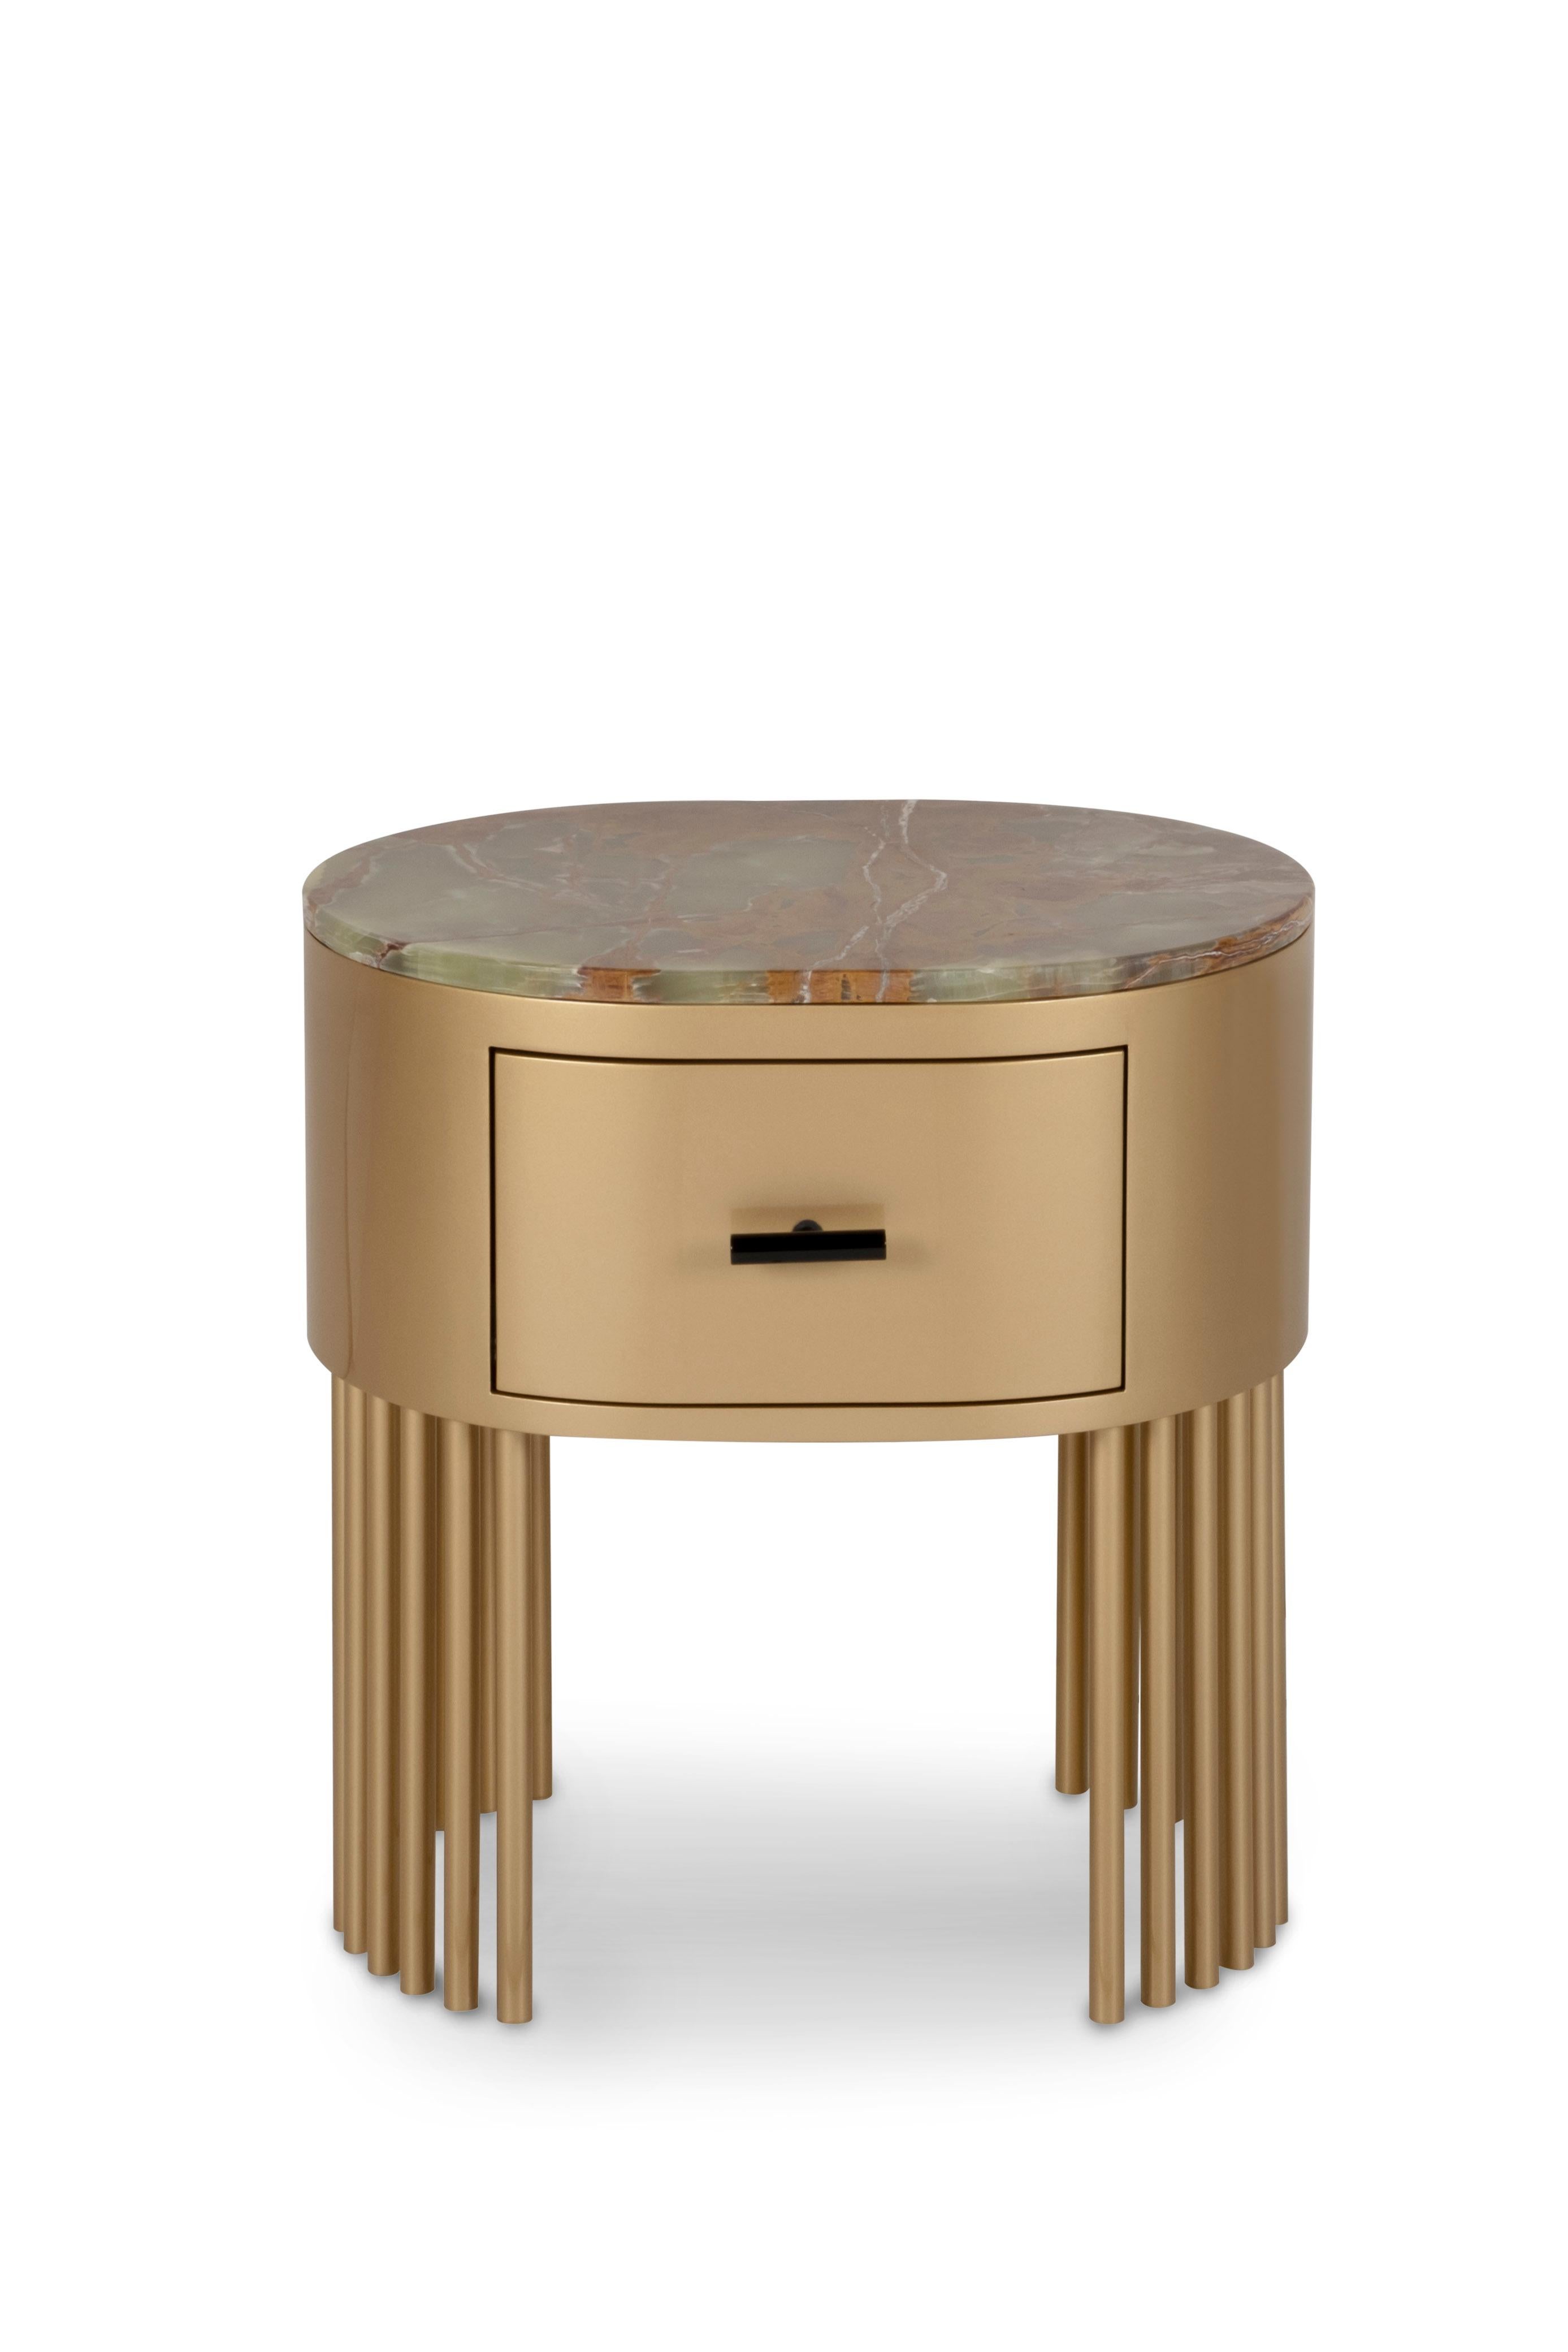 Mons Nachttisch, Collection'S Contemporary, handgefertigt in Portugal - Europa von Greenapple.

Der Nachttisch Mons bietet ein zeitloses Design für Ihren Wohnbereich. Mons ist ein Nachttisch aus Holz mit Gold-Patina-Effekt lackiert und mit einer